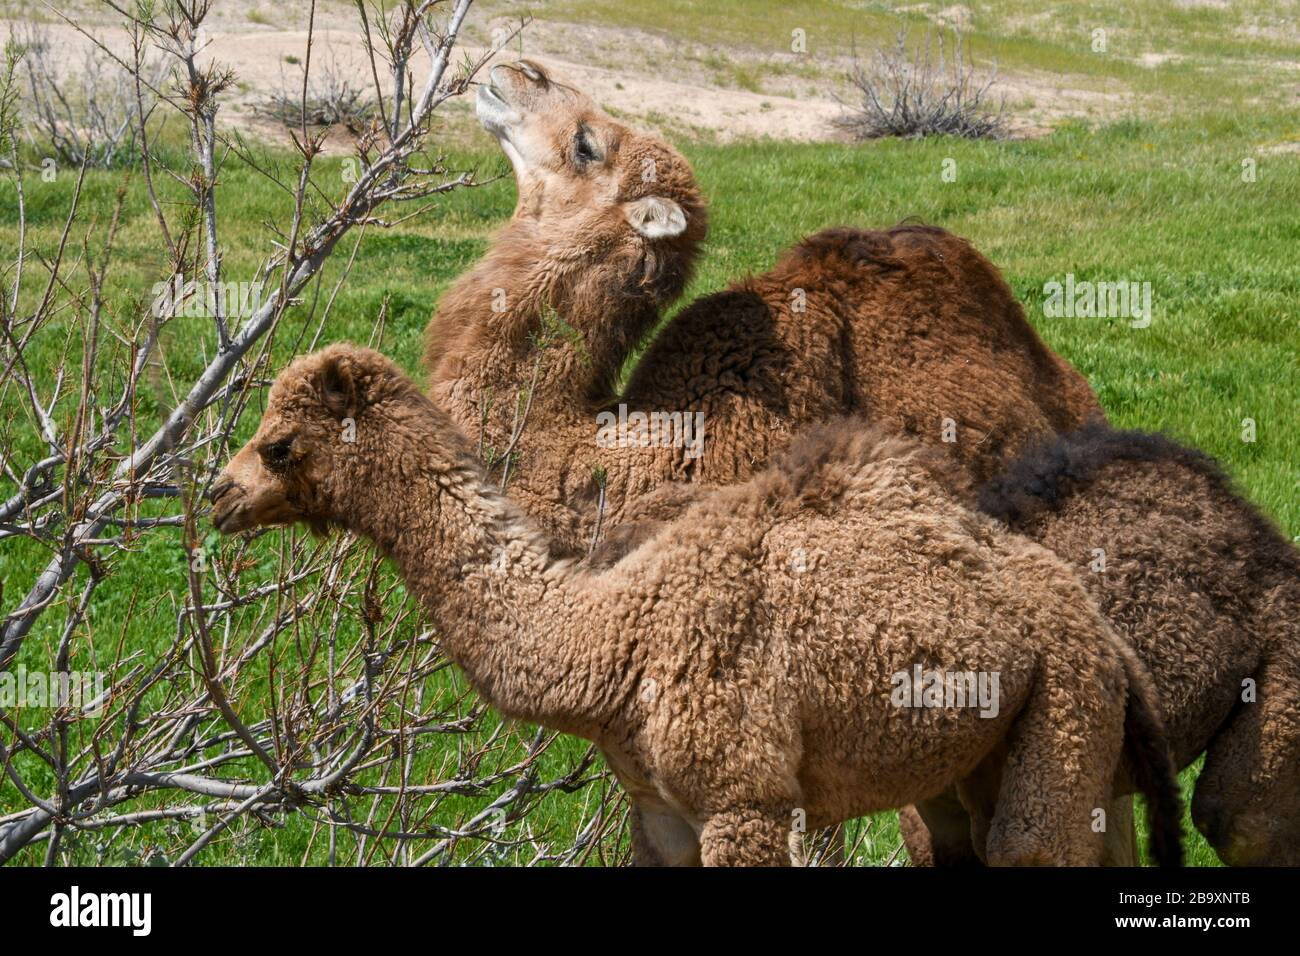 Dos camellos dromedarios jóvenes que se alimentan de un arbusto fotografiaron el valle de Kidron, el desierto de Judea, Cisjordania Palestina Israel en marzo Foto de stock